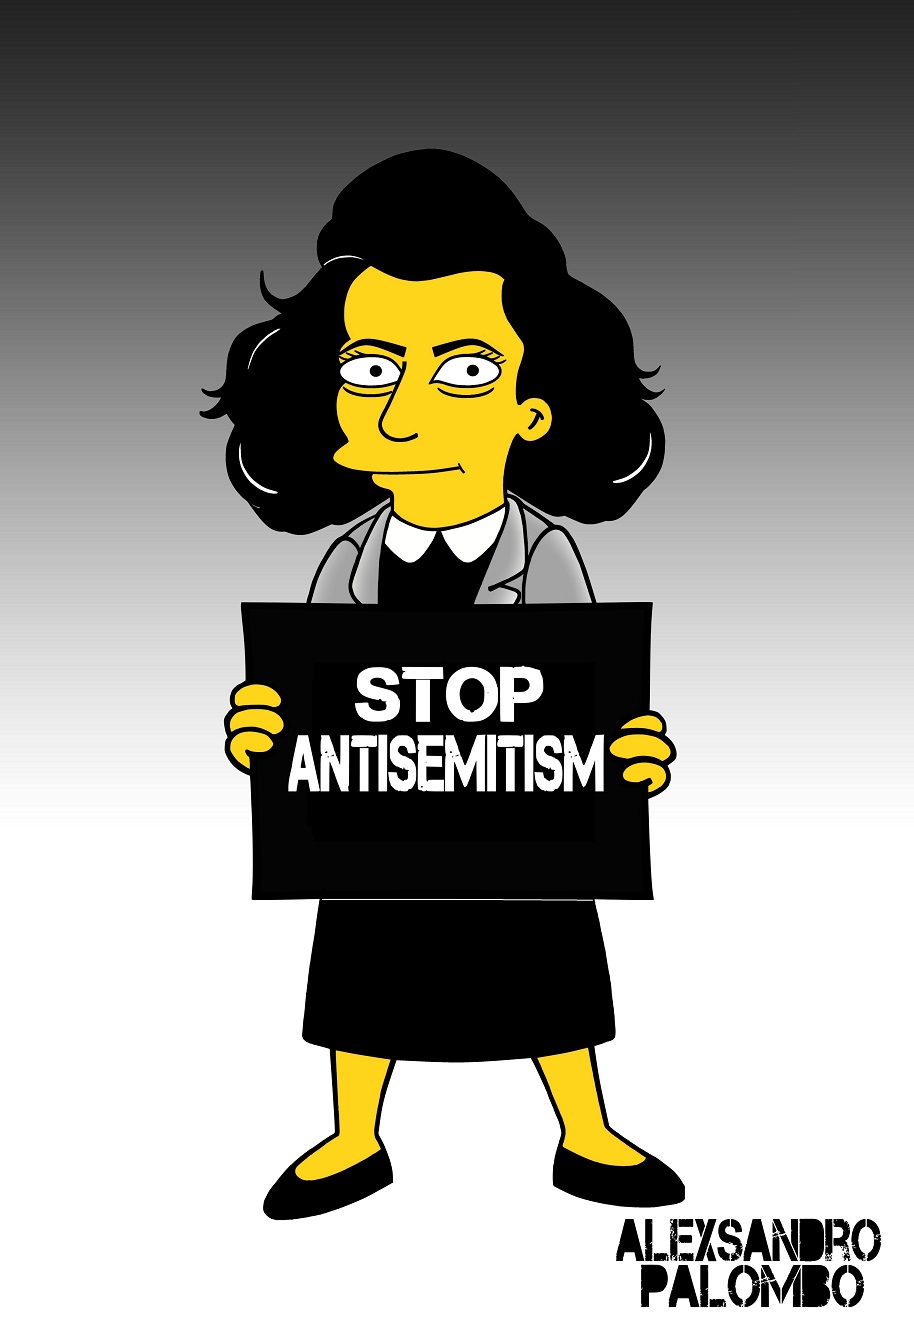 "Zastavte antisemitismus," hlásí cedule, kterou drží Anna Franková. "Jen díky paměti jsme schopni bojovat proti rasismu, antisemitismu, homofobii a všem formám netolerance, které ohrožují společnost a svobodu. Je potřeba se zasadit o rozmanitost ve společnosti," dodal aleXandro Palombo.